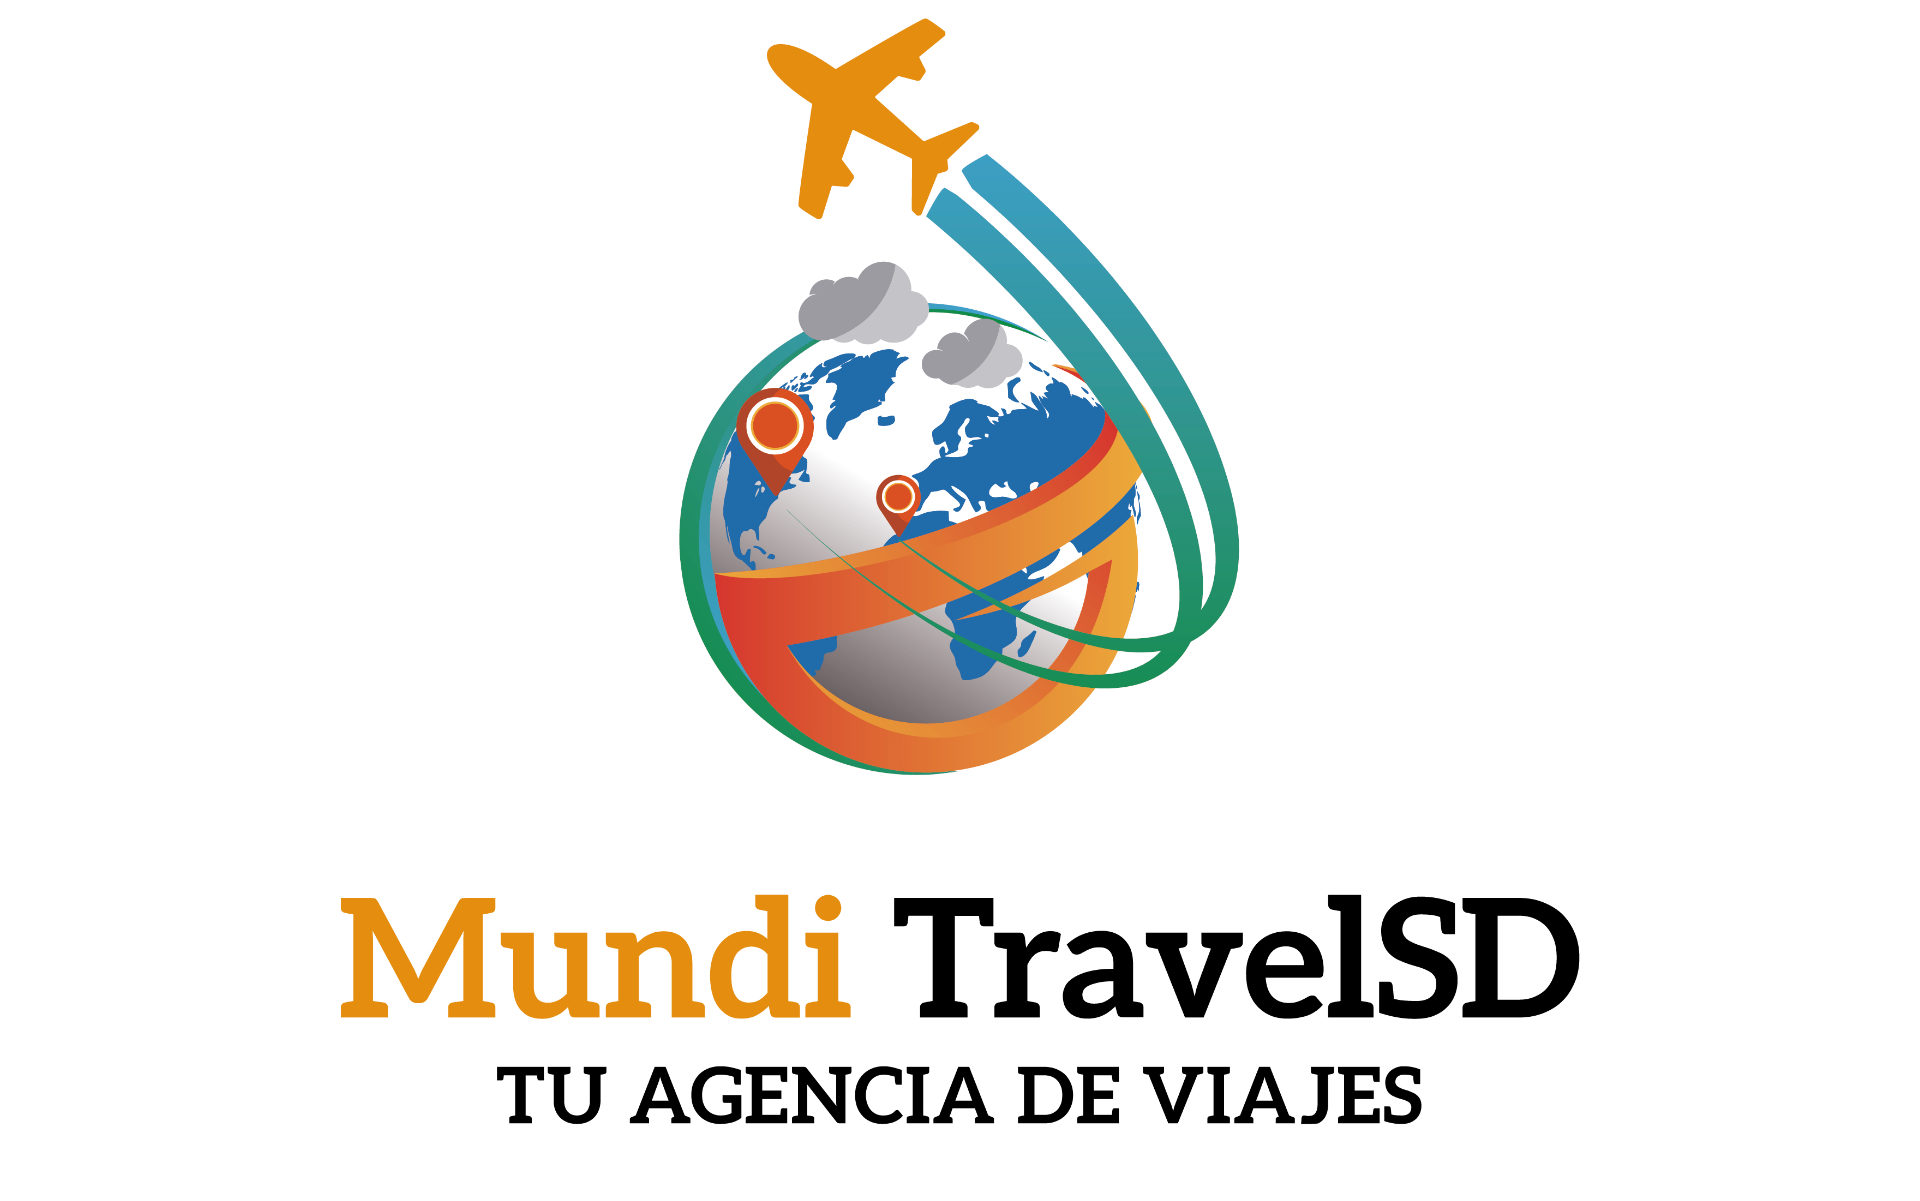 Agencia de viajes Mundi TravelSD